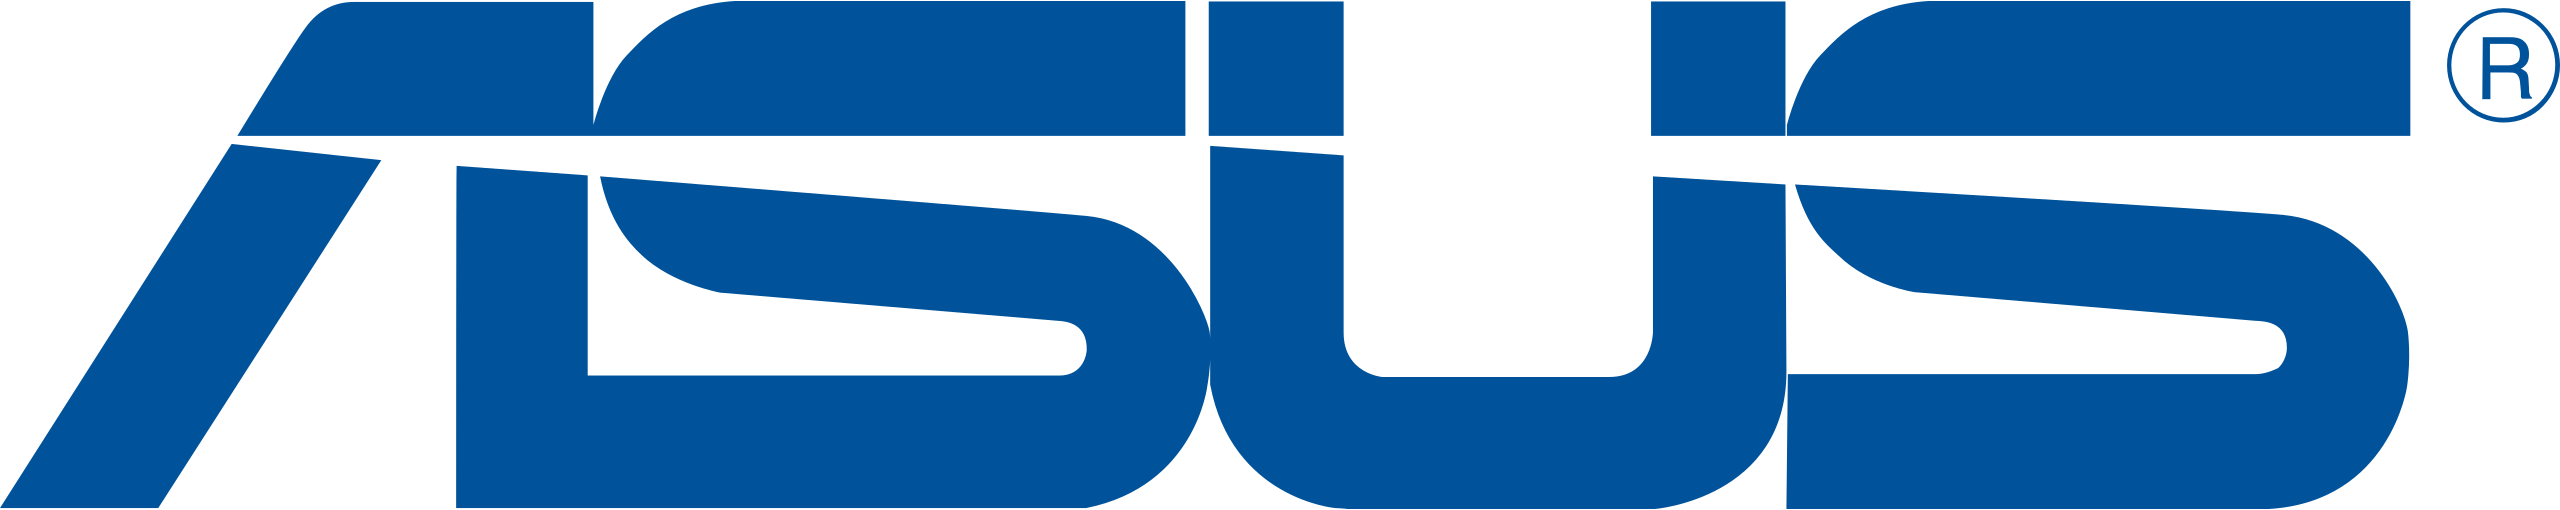 Asus Logo Download Free PNG